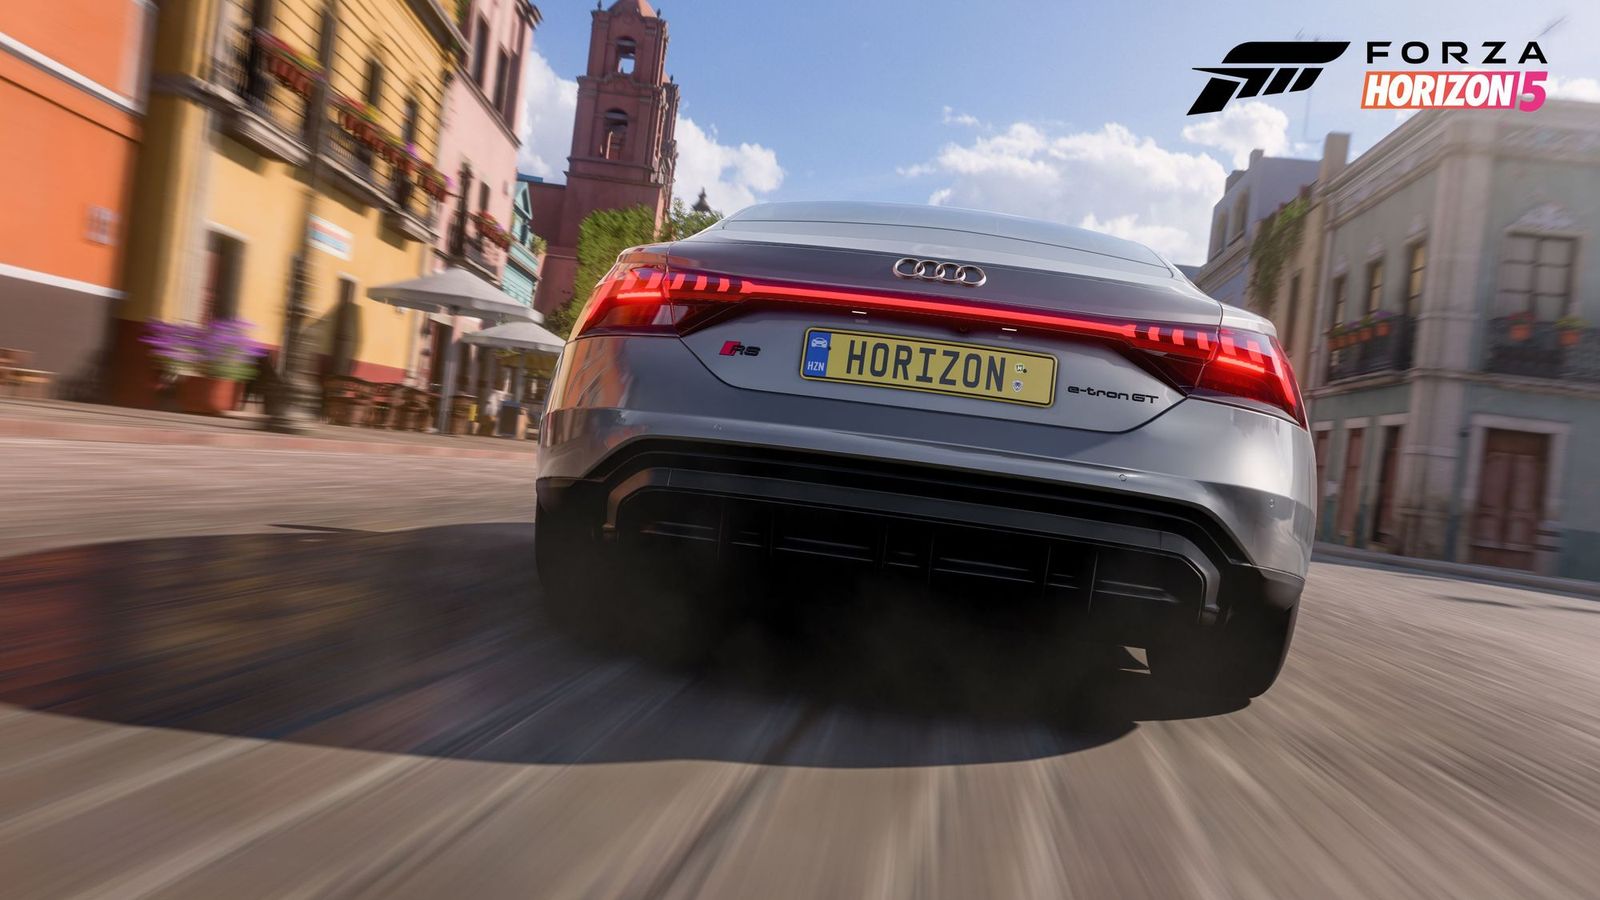 Forza Horizon 5 Audi RS e-tron GT free gift